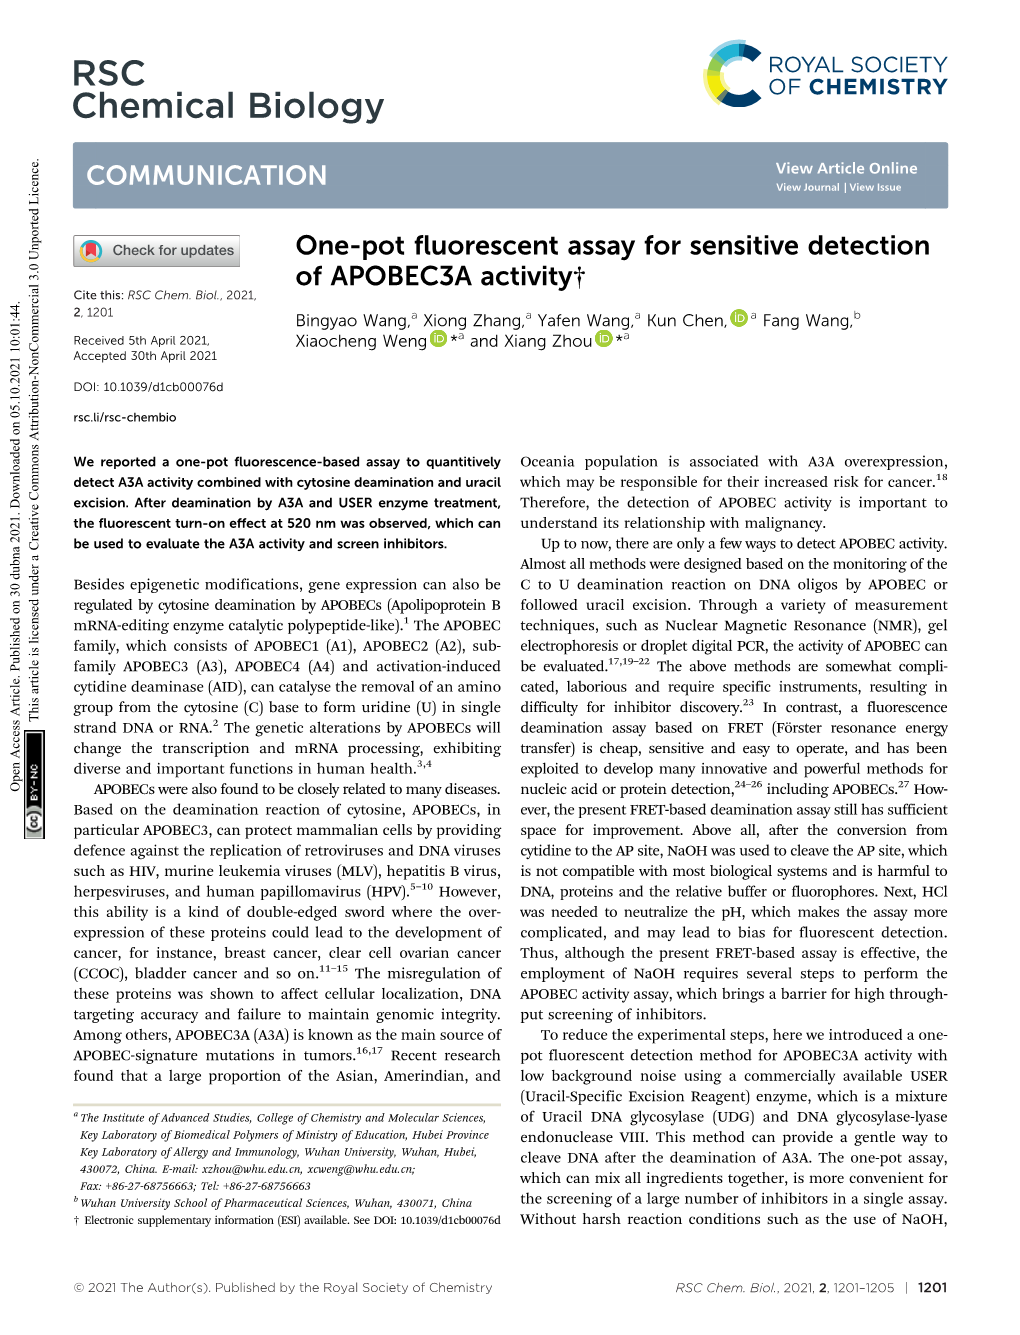 One-Pot Fluorescent Assay for Sensitive Detection of APOBEC3A Activity† Cite This: RSC Chem